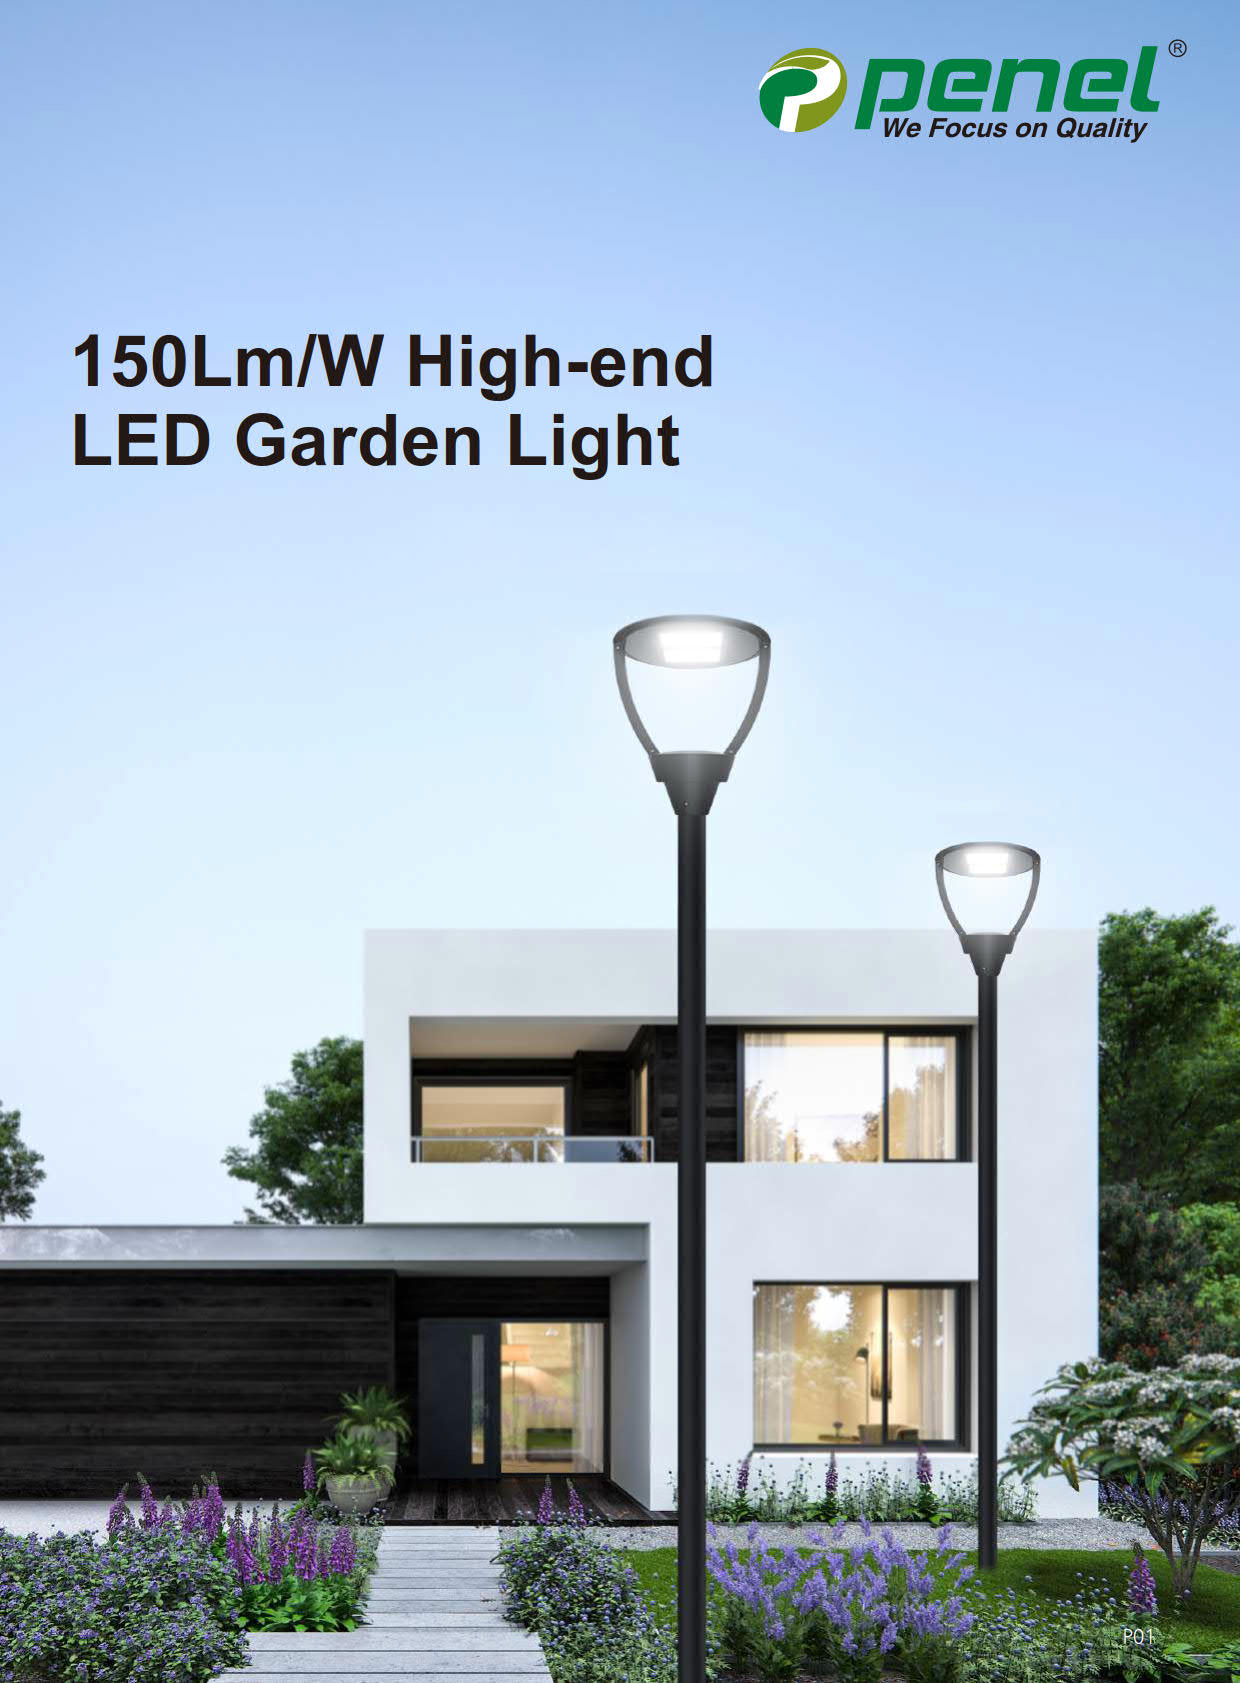 Datasheet of GL-01 (150LMW High-end LED Garden Light from PENEL)